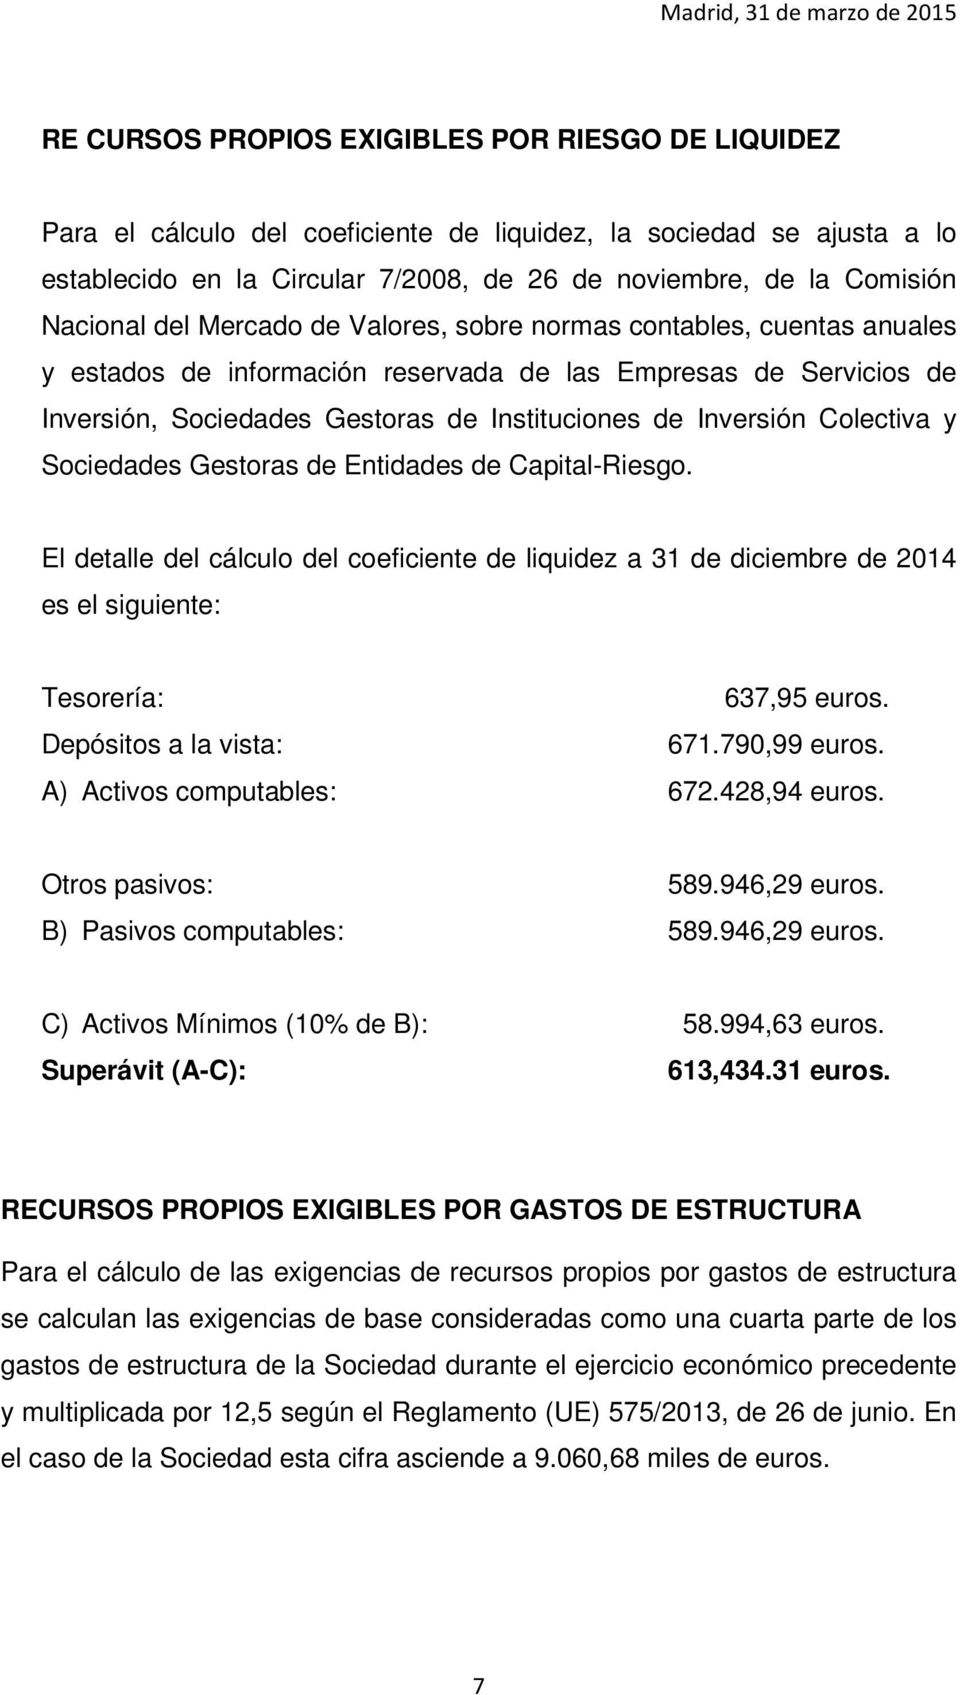 Inversión Colectiva y Sociedades Gestoras de Entidades de Capital-Riesgo. El detalle del cálculo del coeficiente de liquidez a 31 de diciembre de 2014 es el siguiente: Tesorería: 637,95 euros.